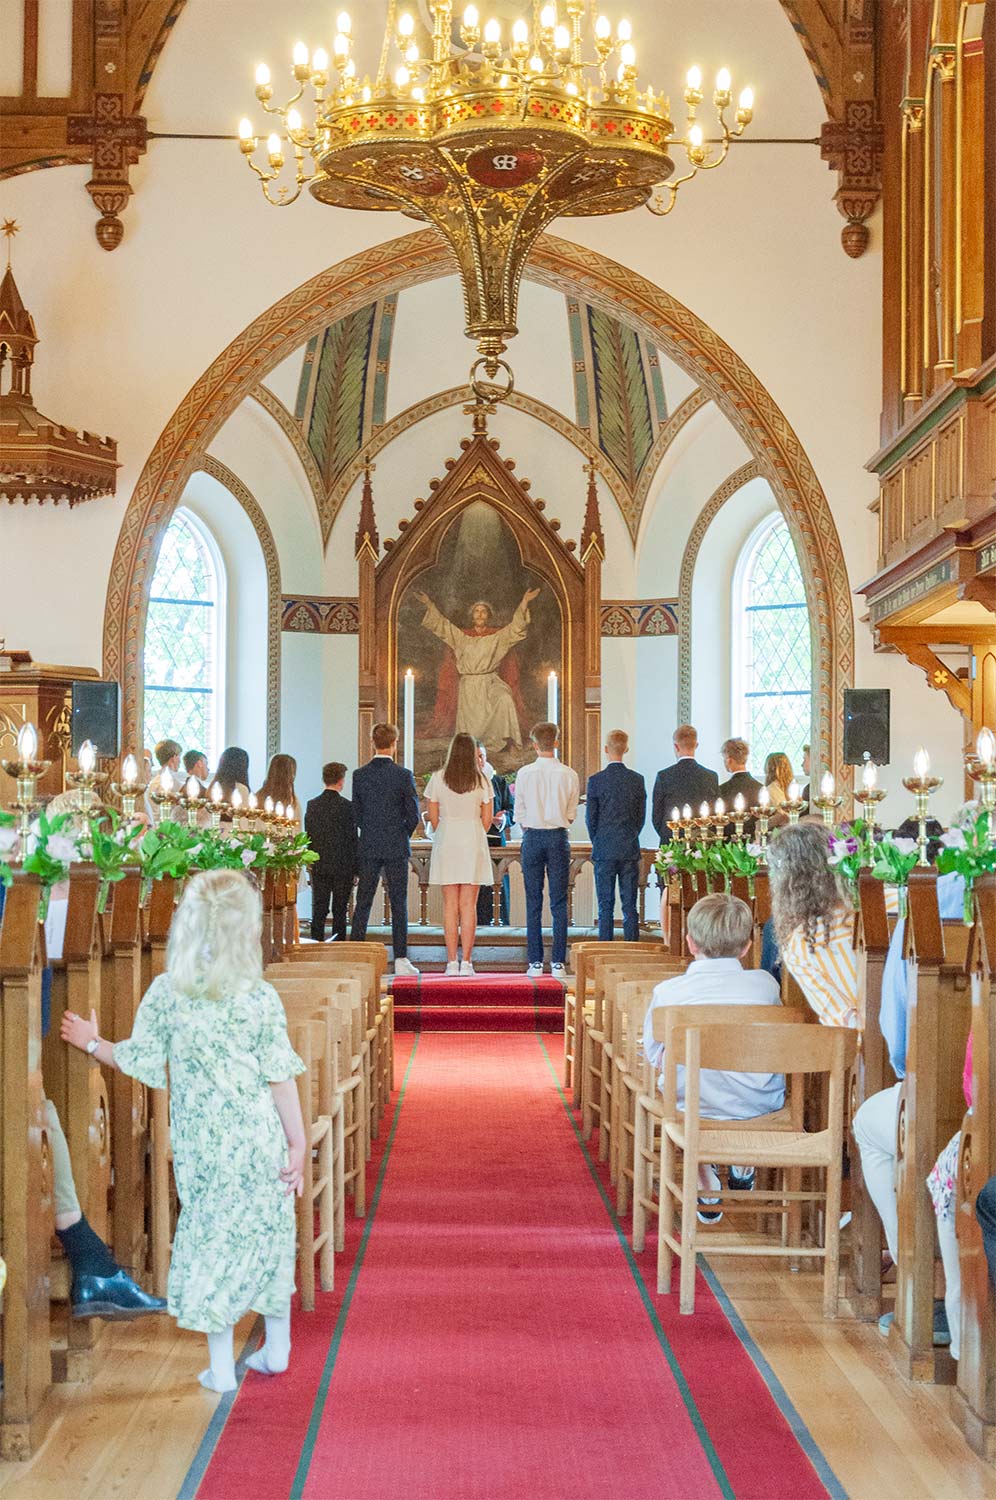 Konfirmation på store bededag 2019 i Dragør Kirke. Arkivfoto: Hans Jacob Sørensen.